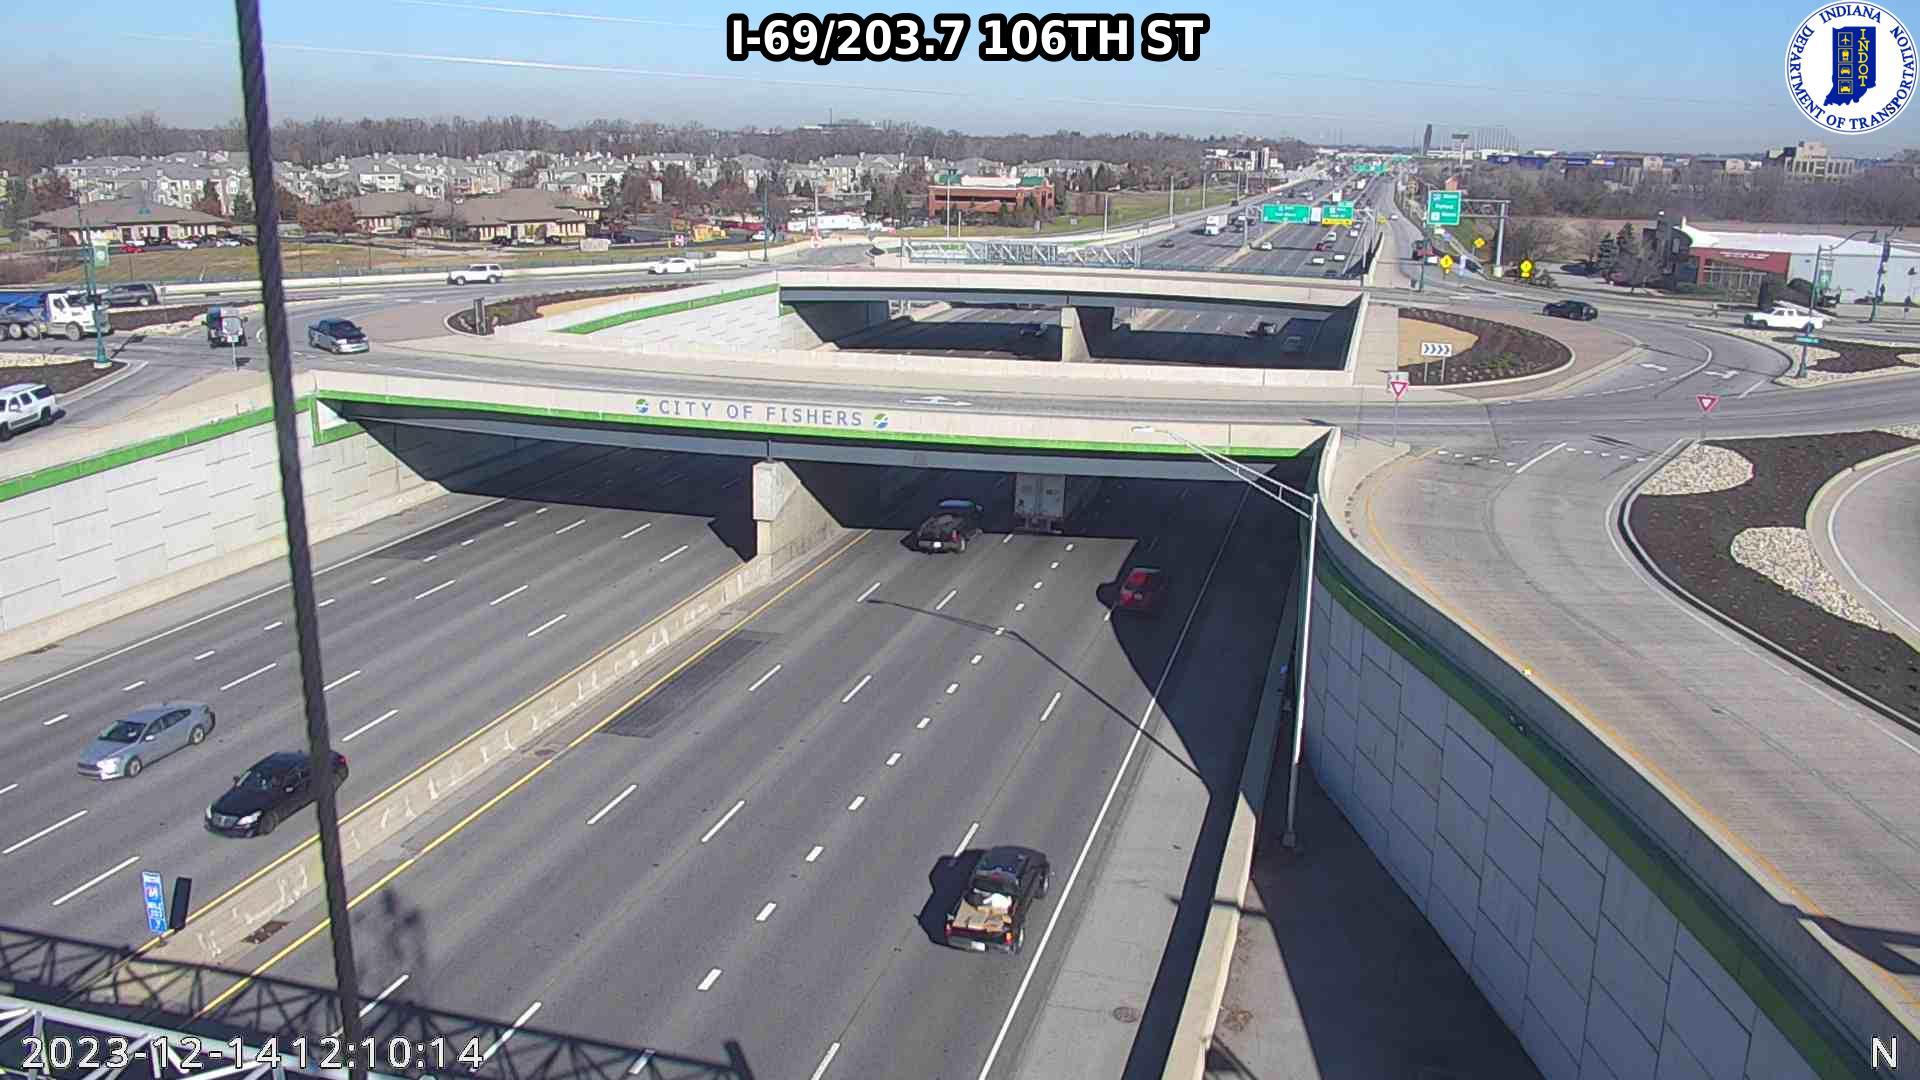 Traffic Cam Fishers: I-69: I-69/203.7 106TH ST: I-69/203.7 106TH ST Player